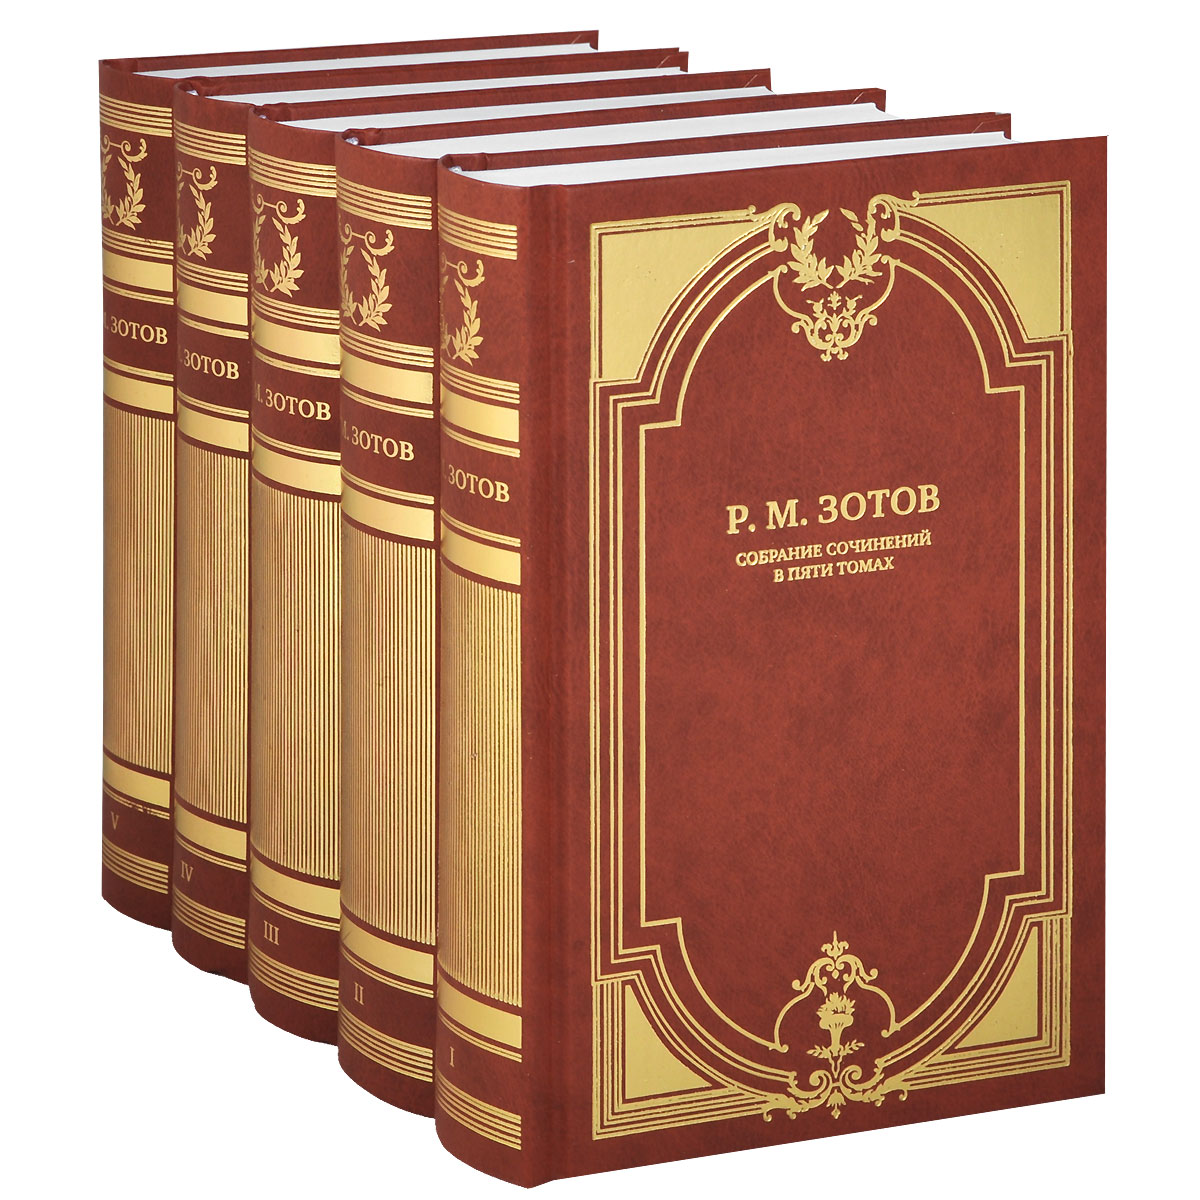 Р. М. Зотов. Собрание сочинений в 5 томах (комплект из 5 книг)